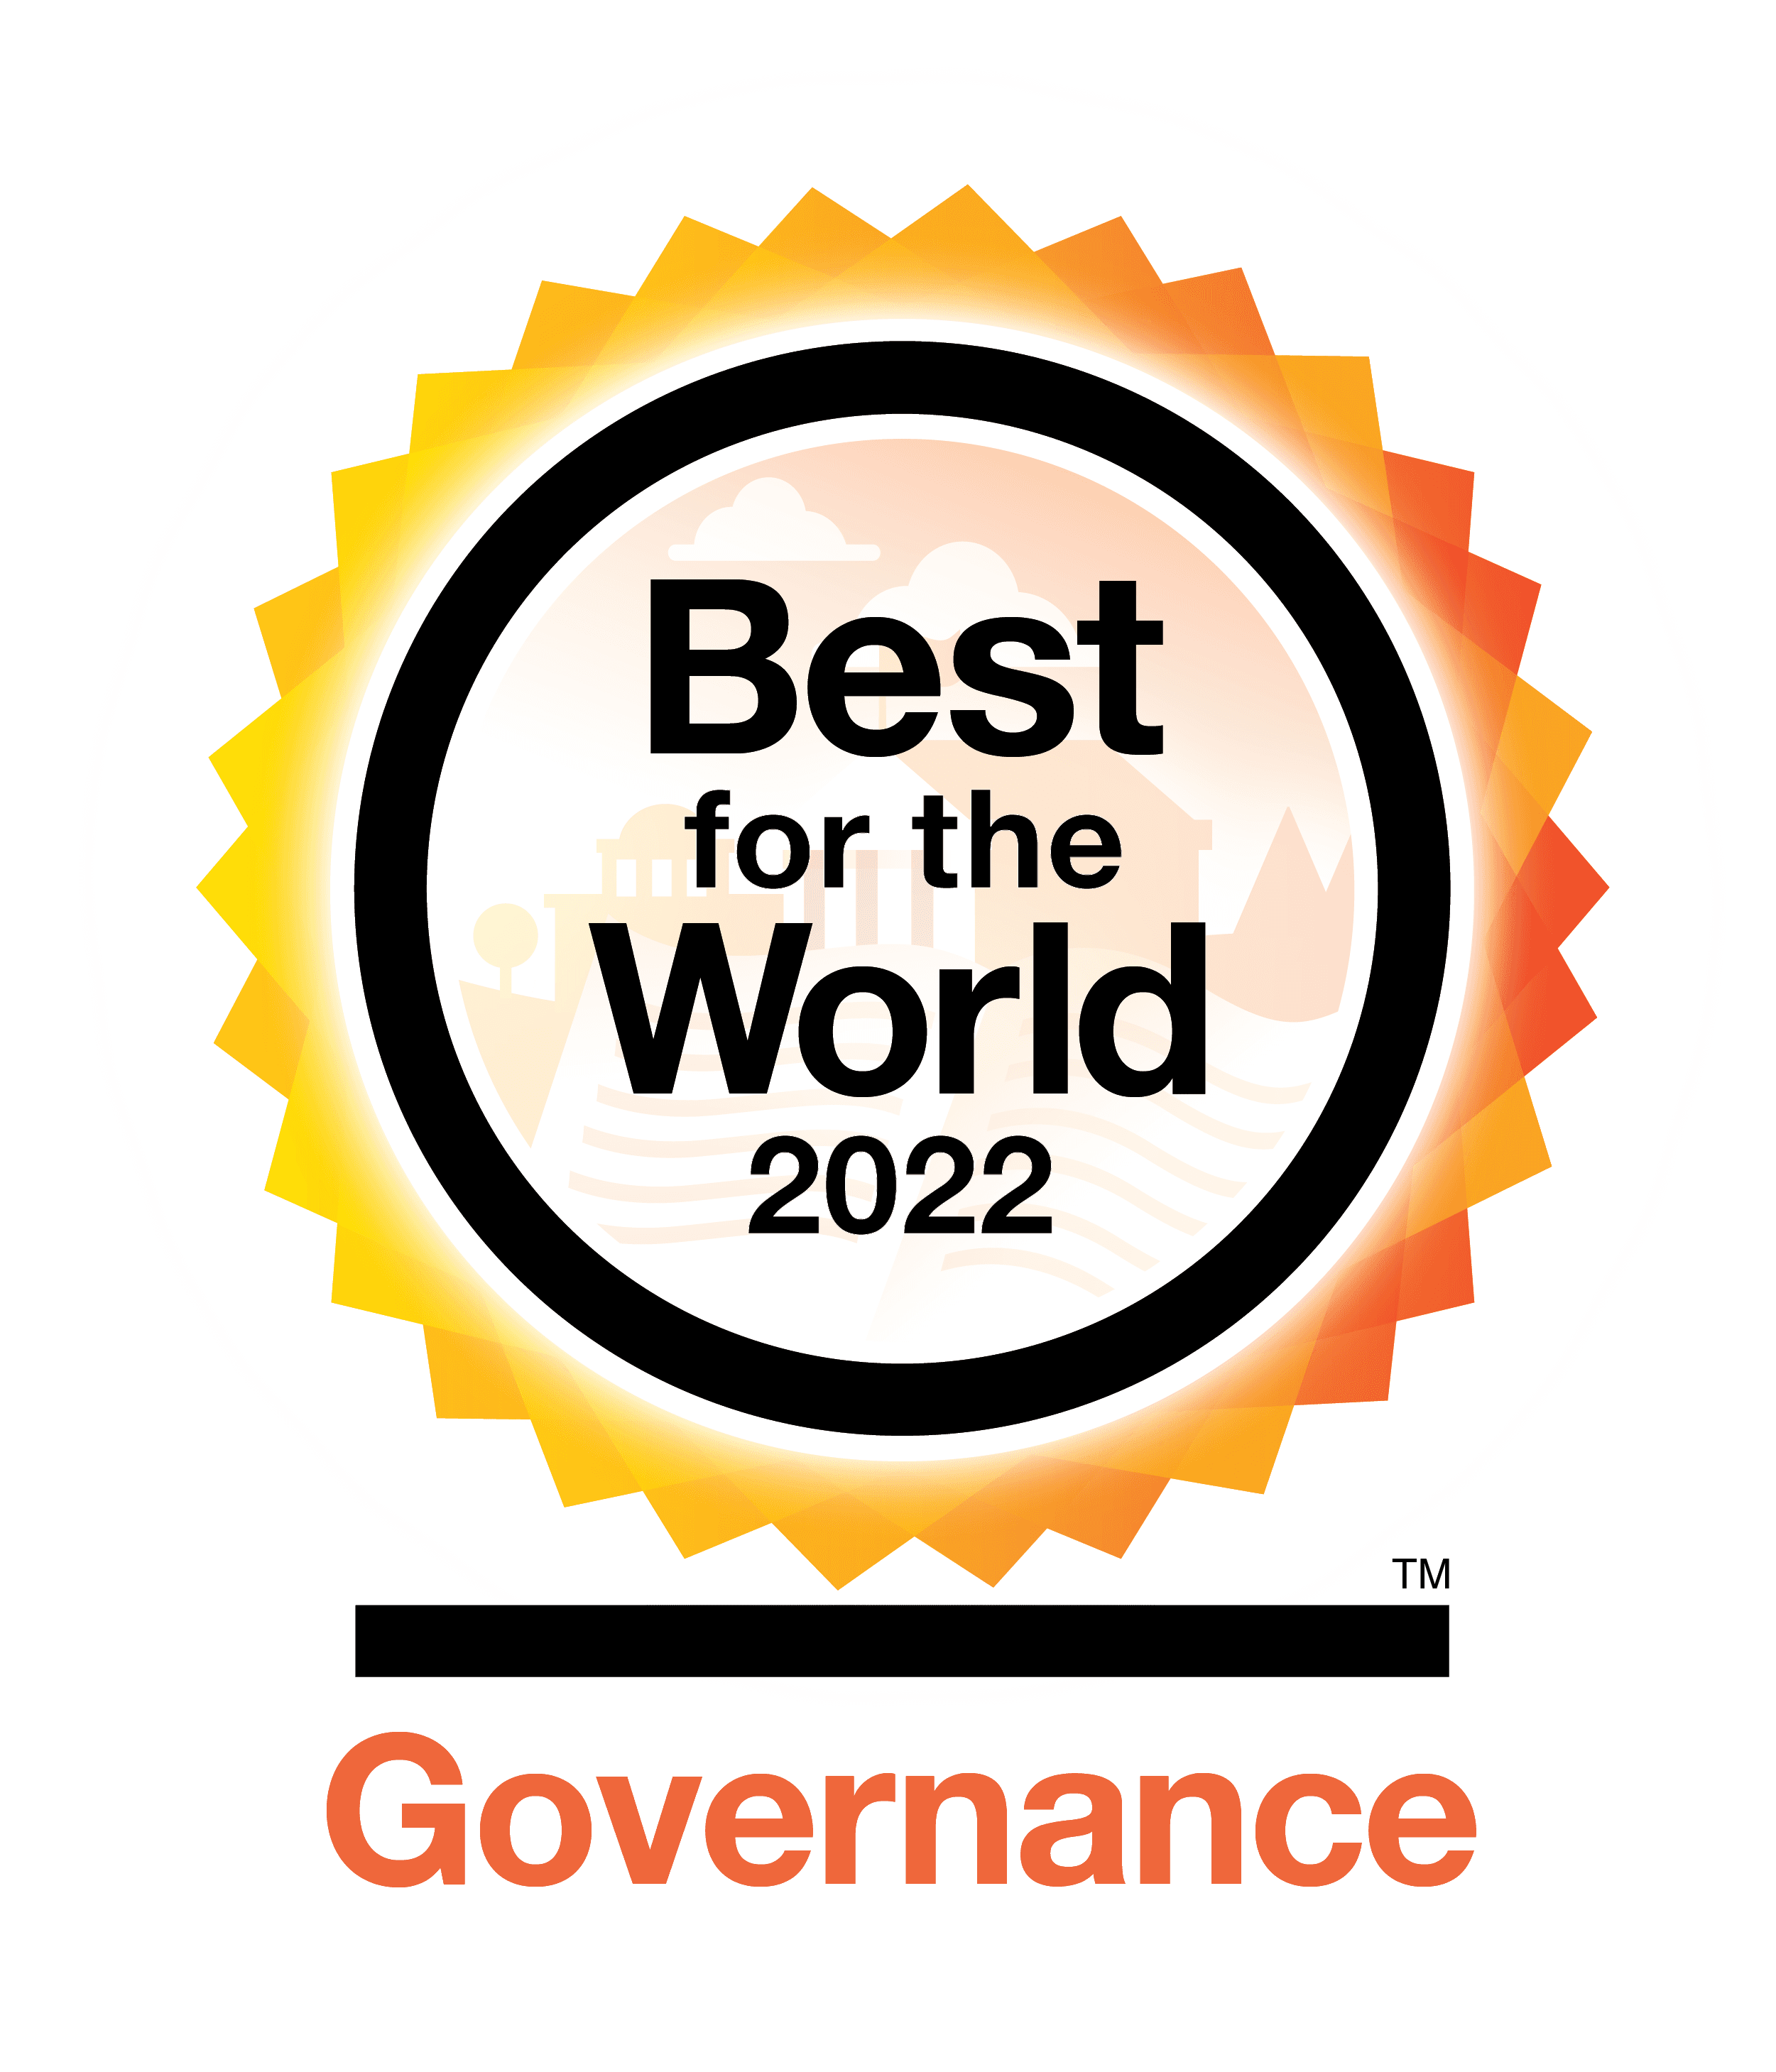 B Corp "Best for the World" Governance award logo.